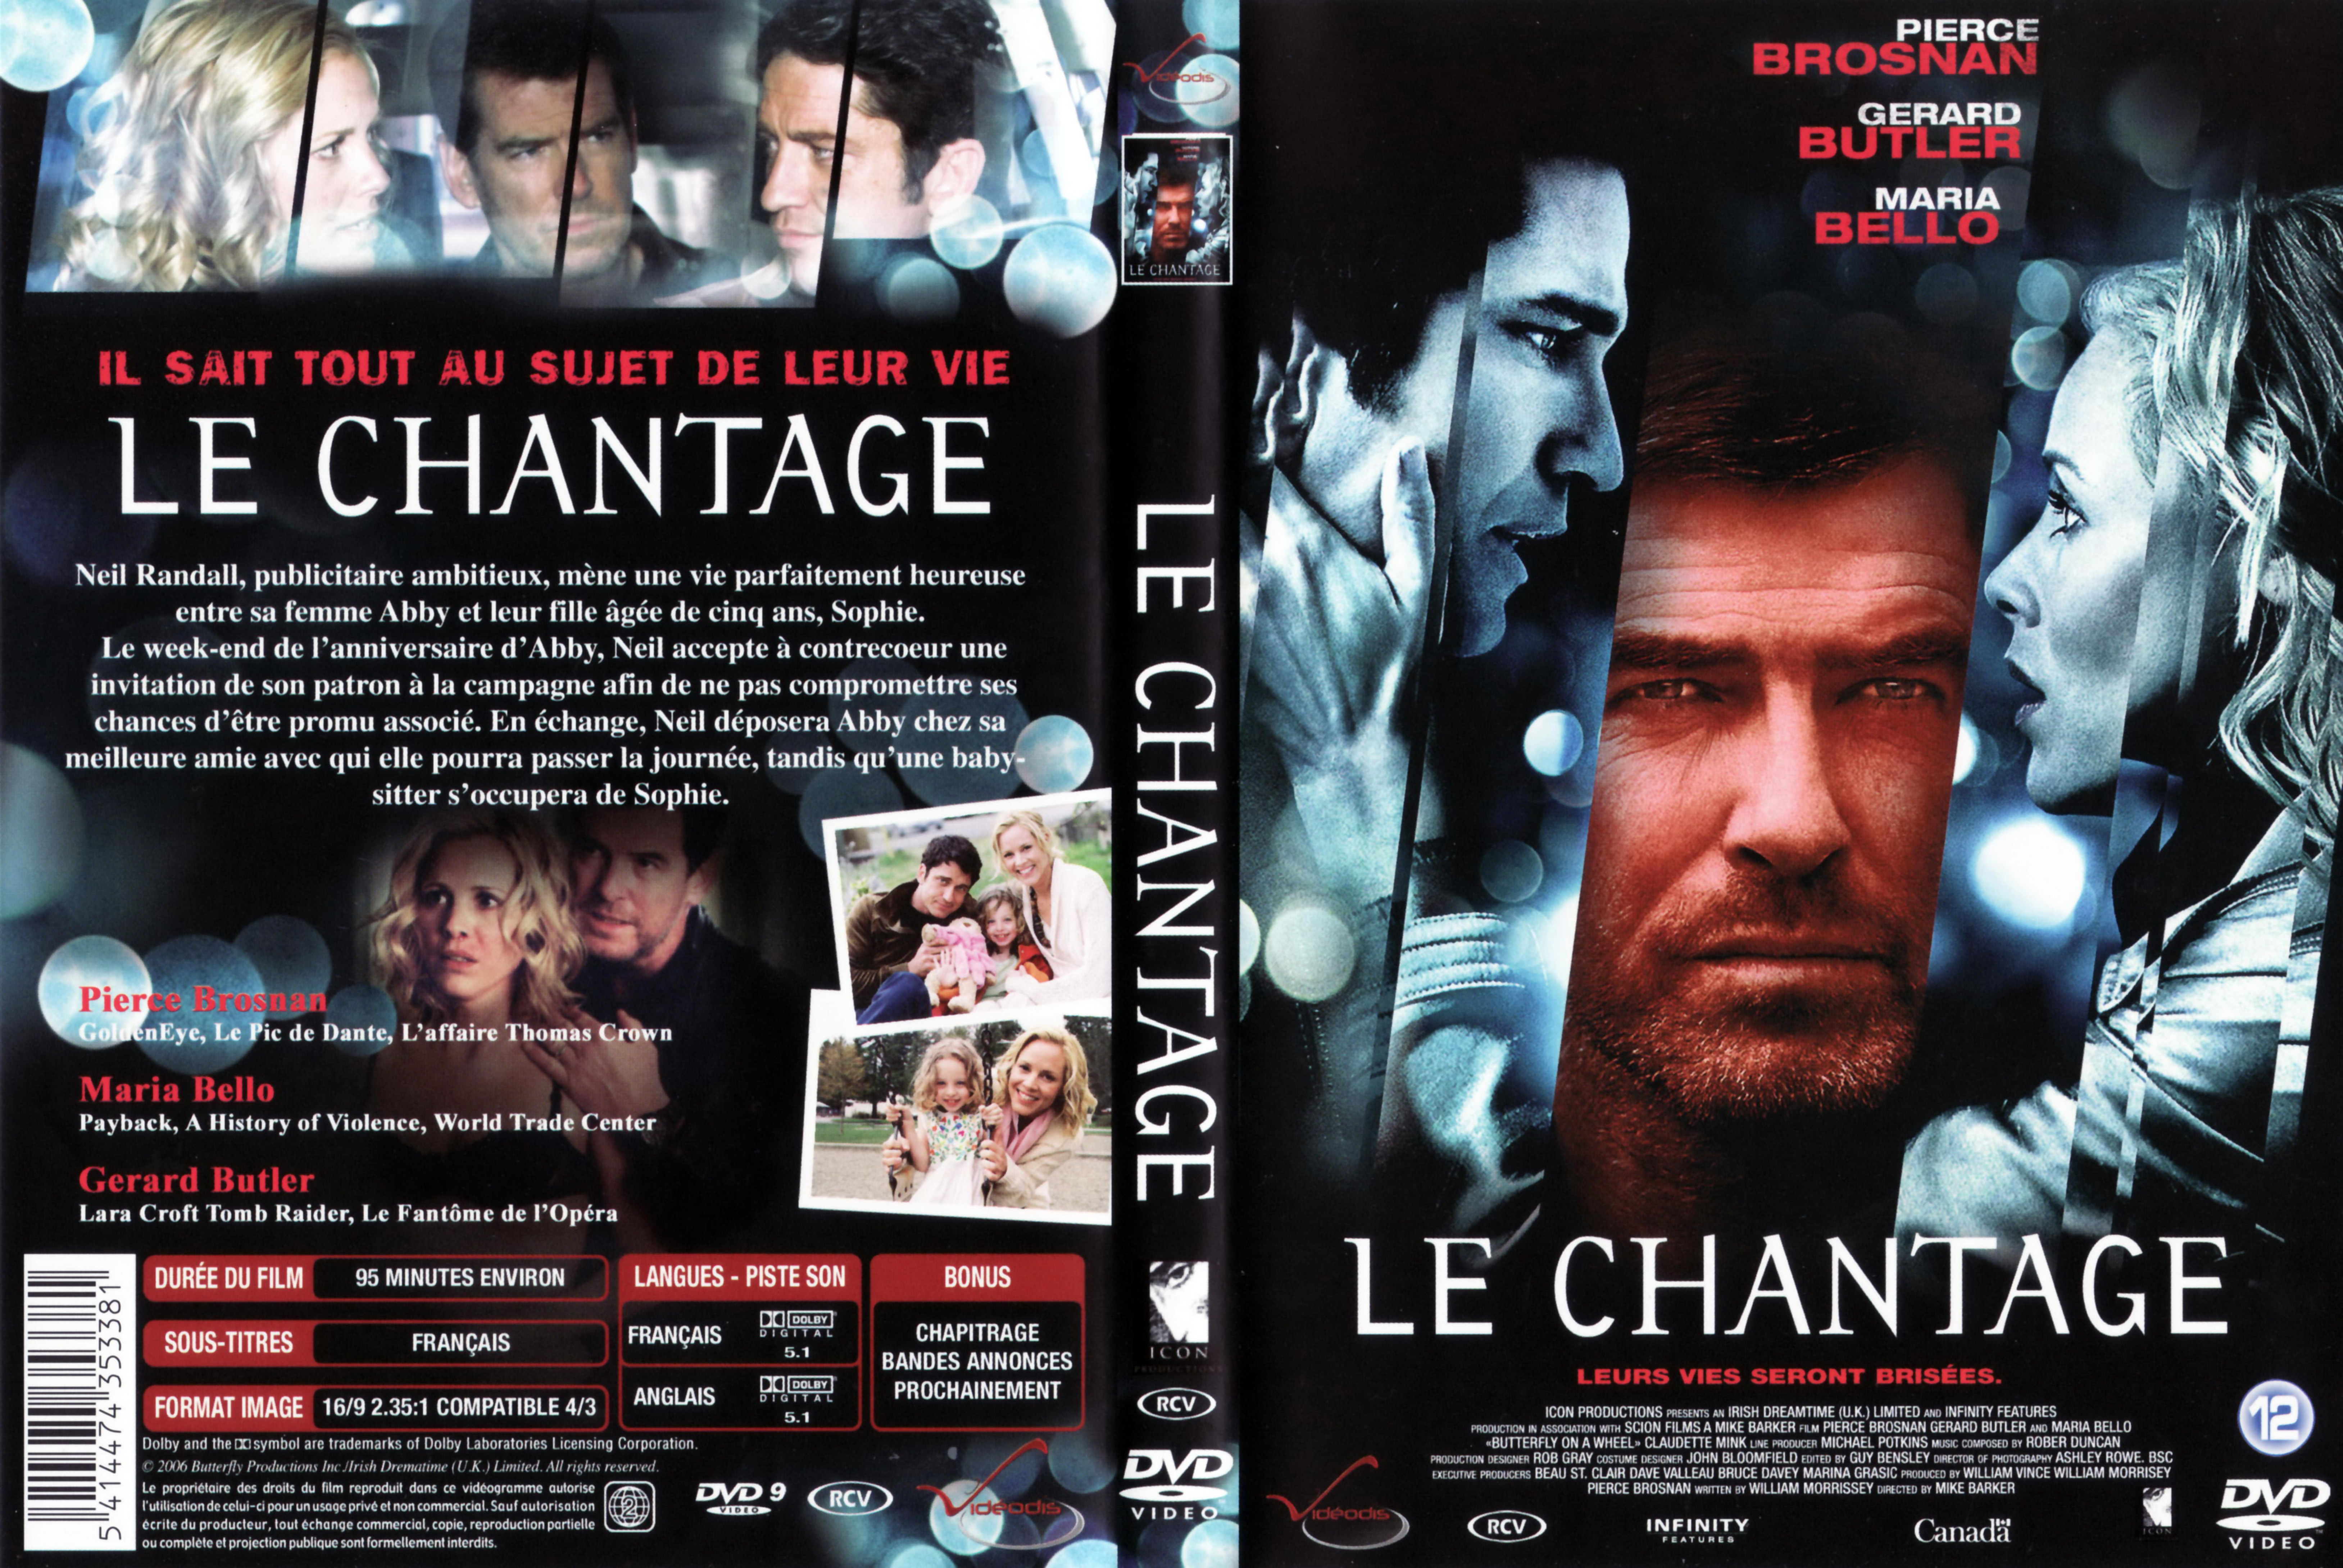 Jaquette DVD Le chantage v2